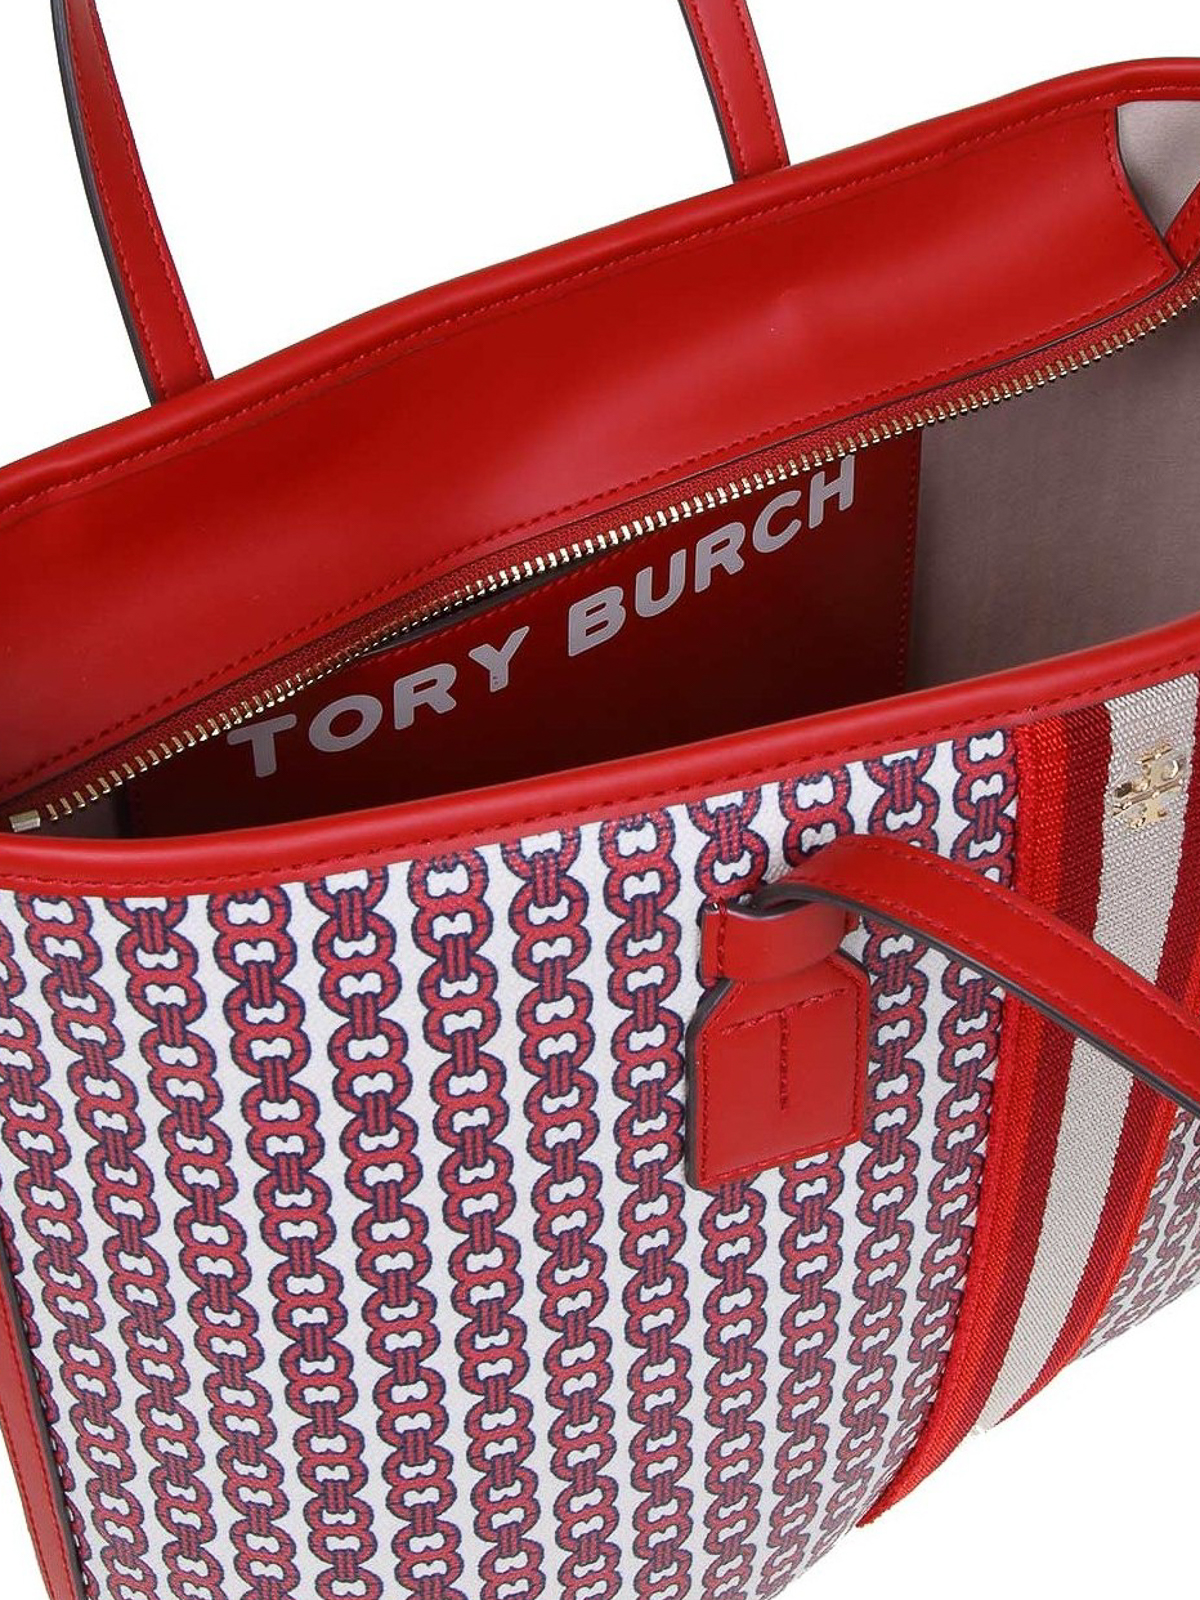 Tory Burch Gemini Link Tote Bag